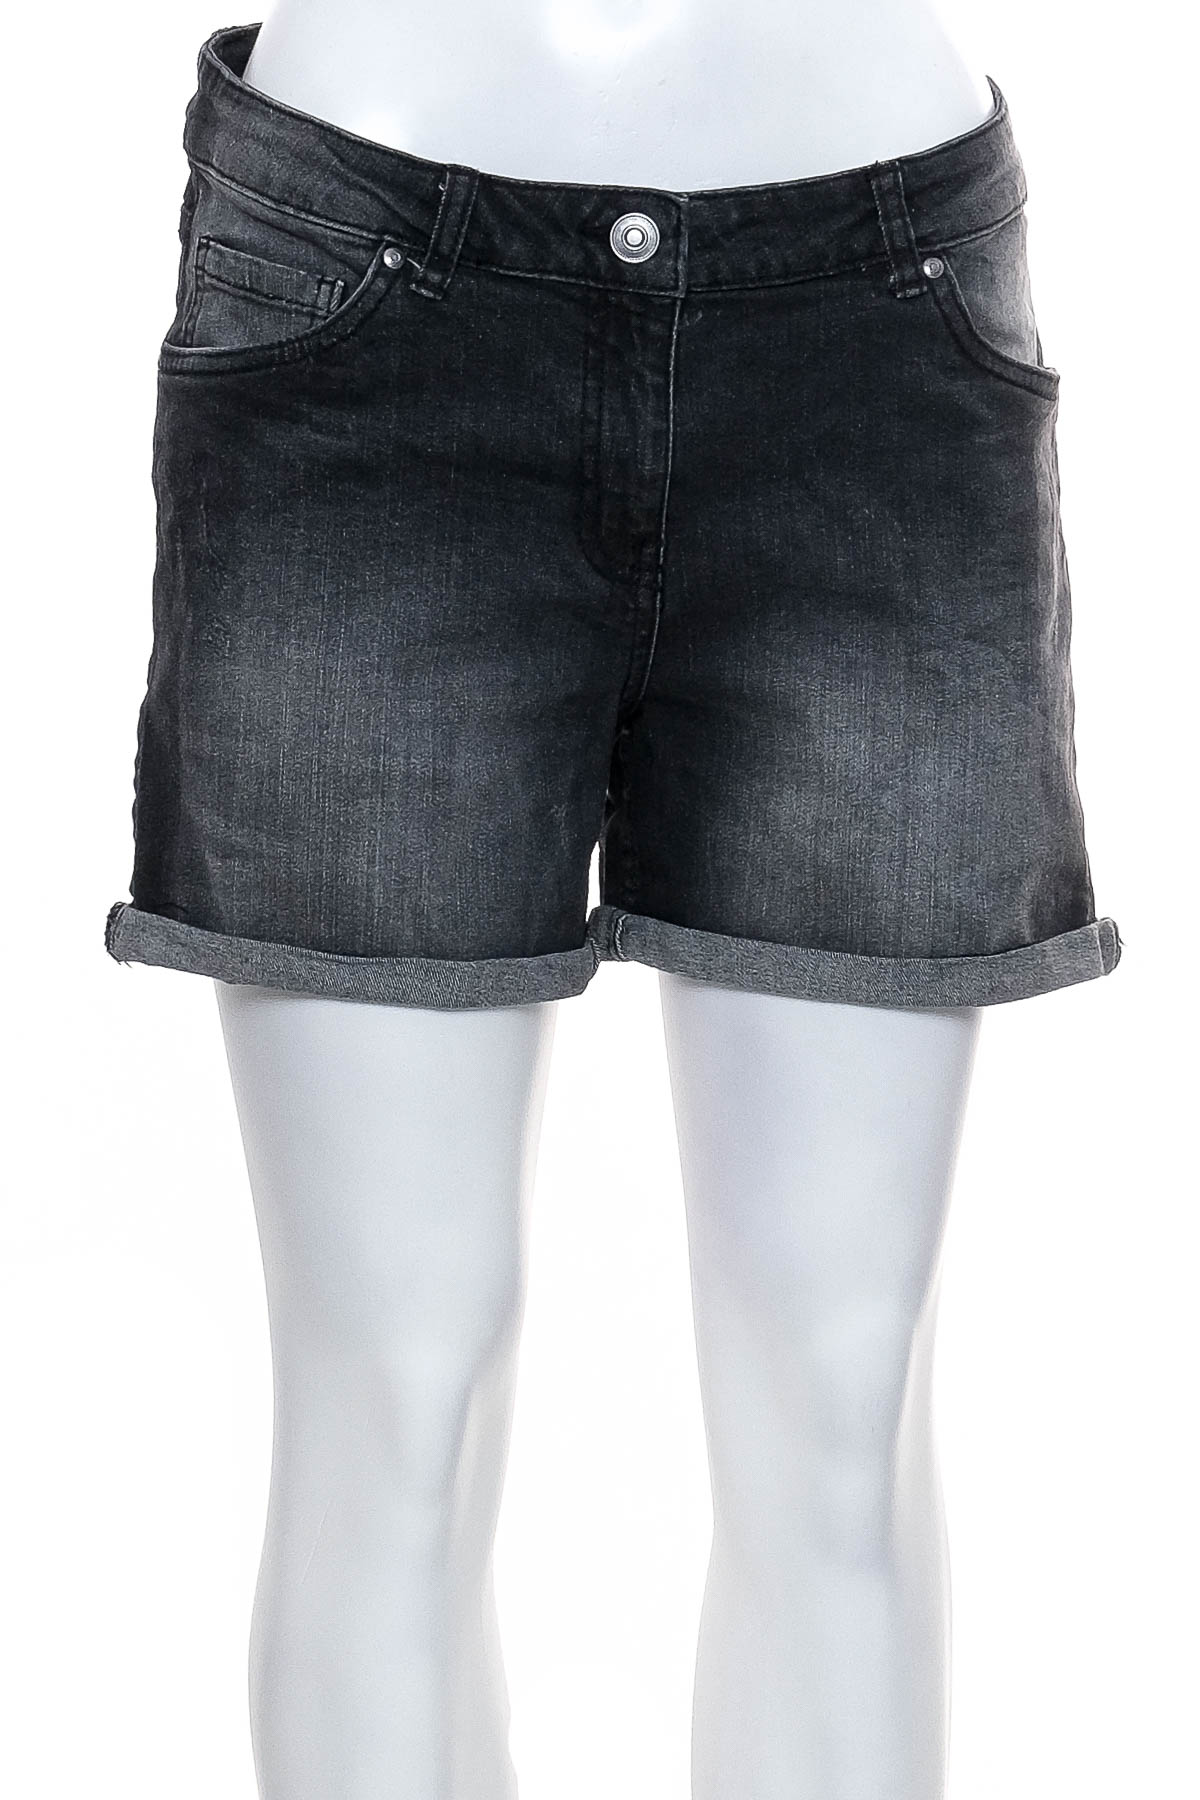 Female shorts - UP2FASHION - 0